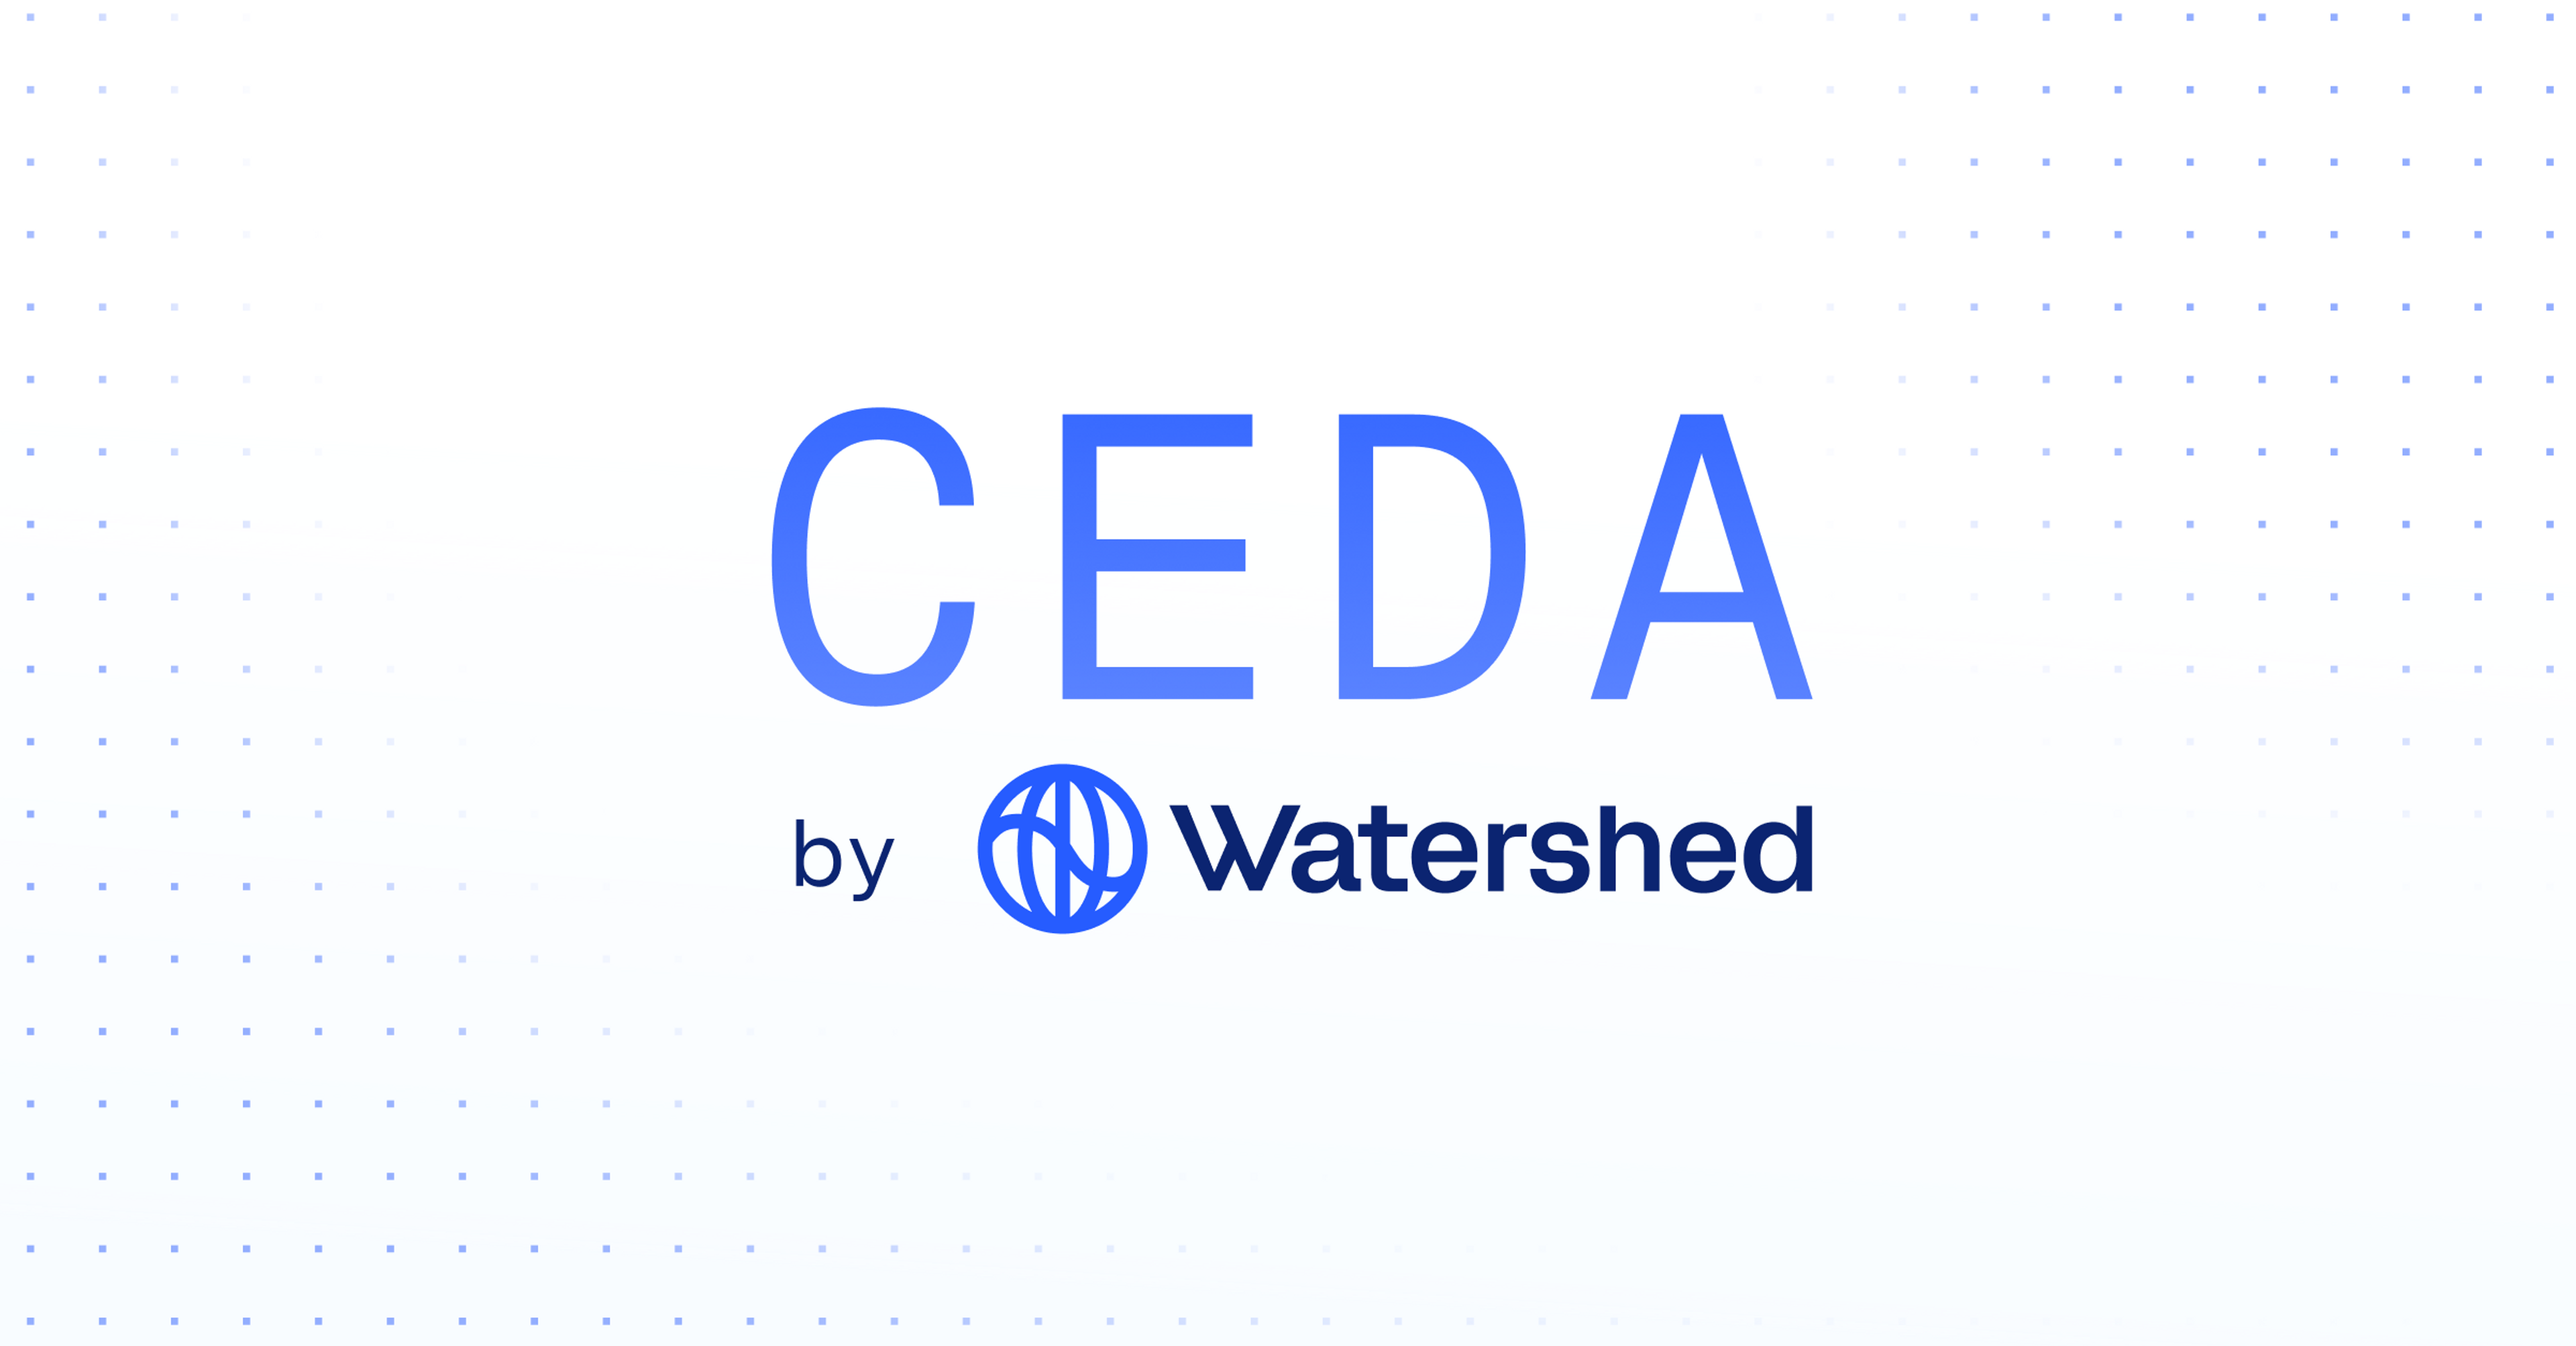 CEDA by Watershed logo